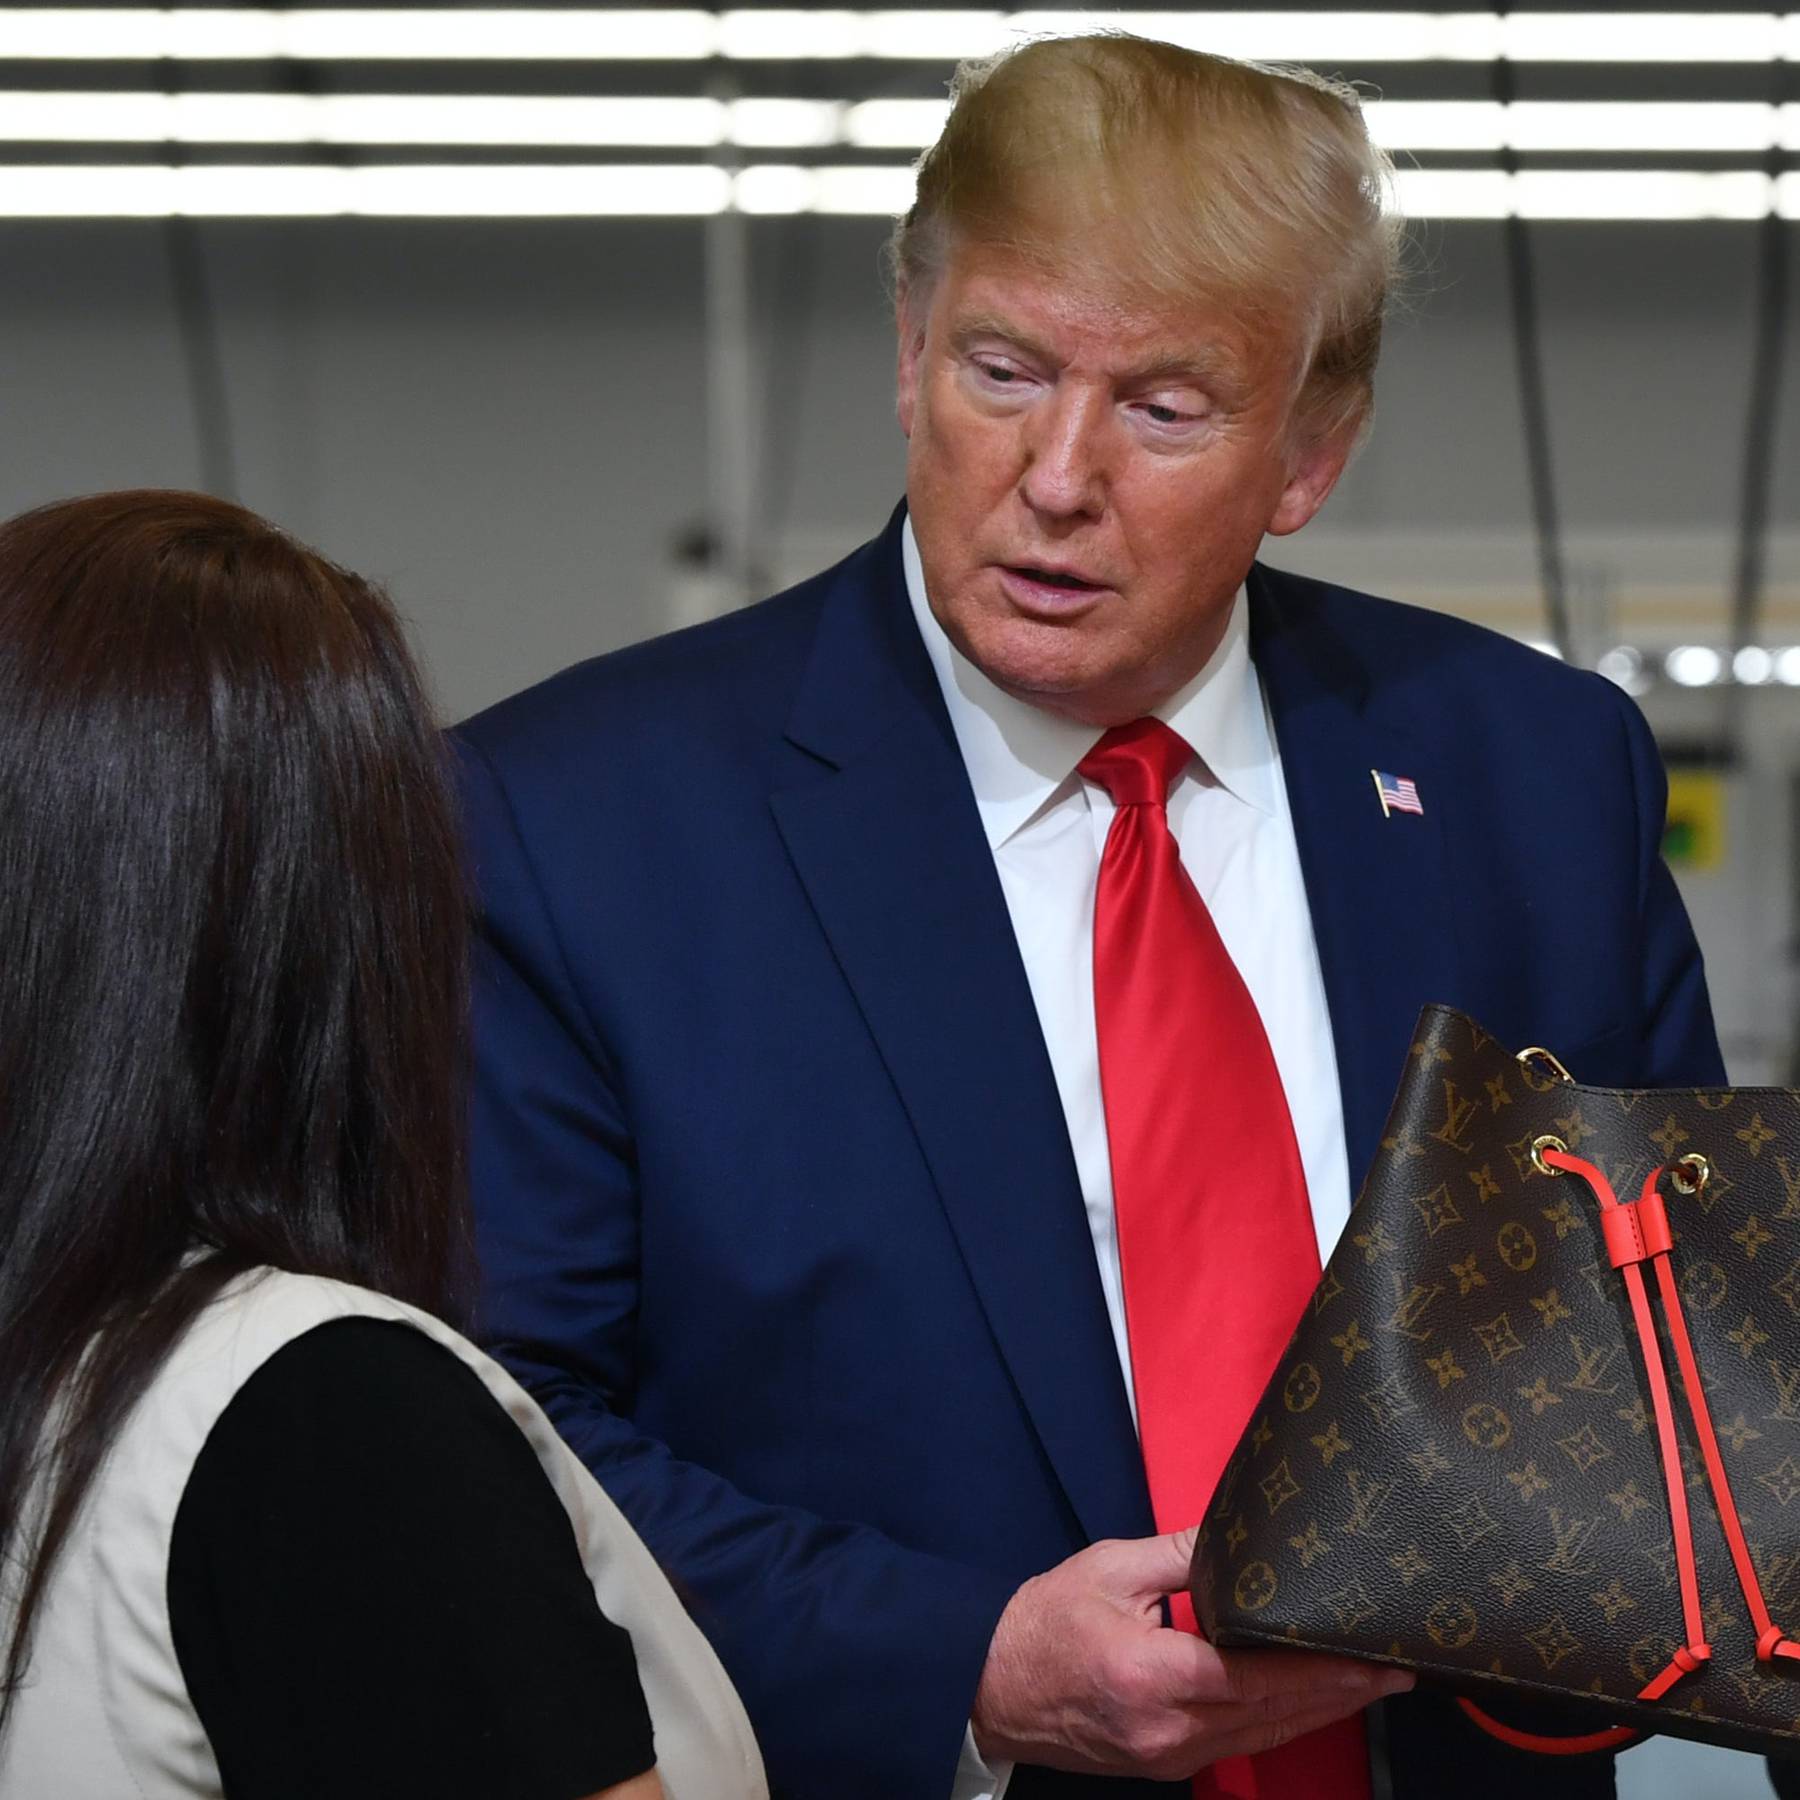 Louis Vuitton Faces Boycott Threat After Trump Visits Factory